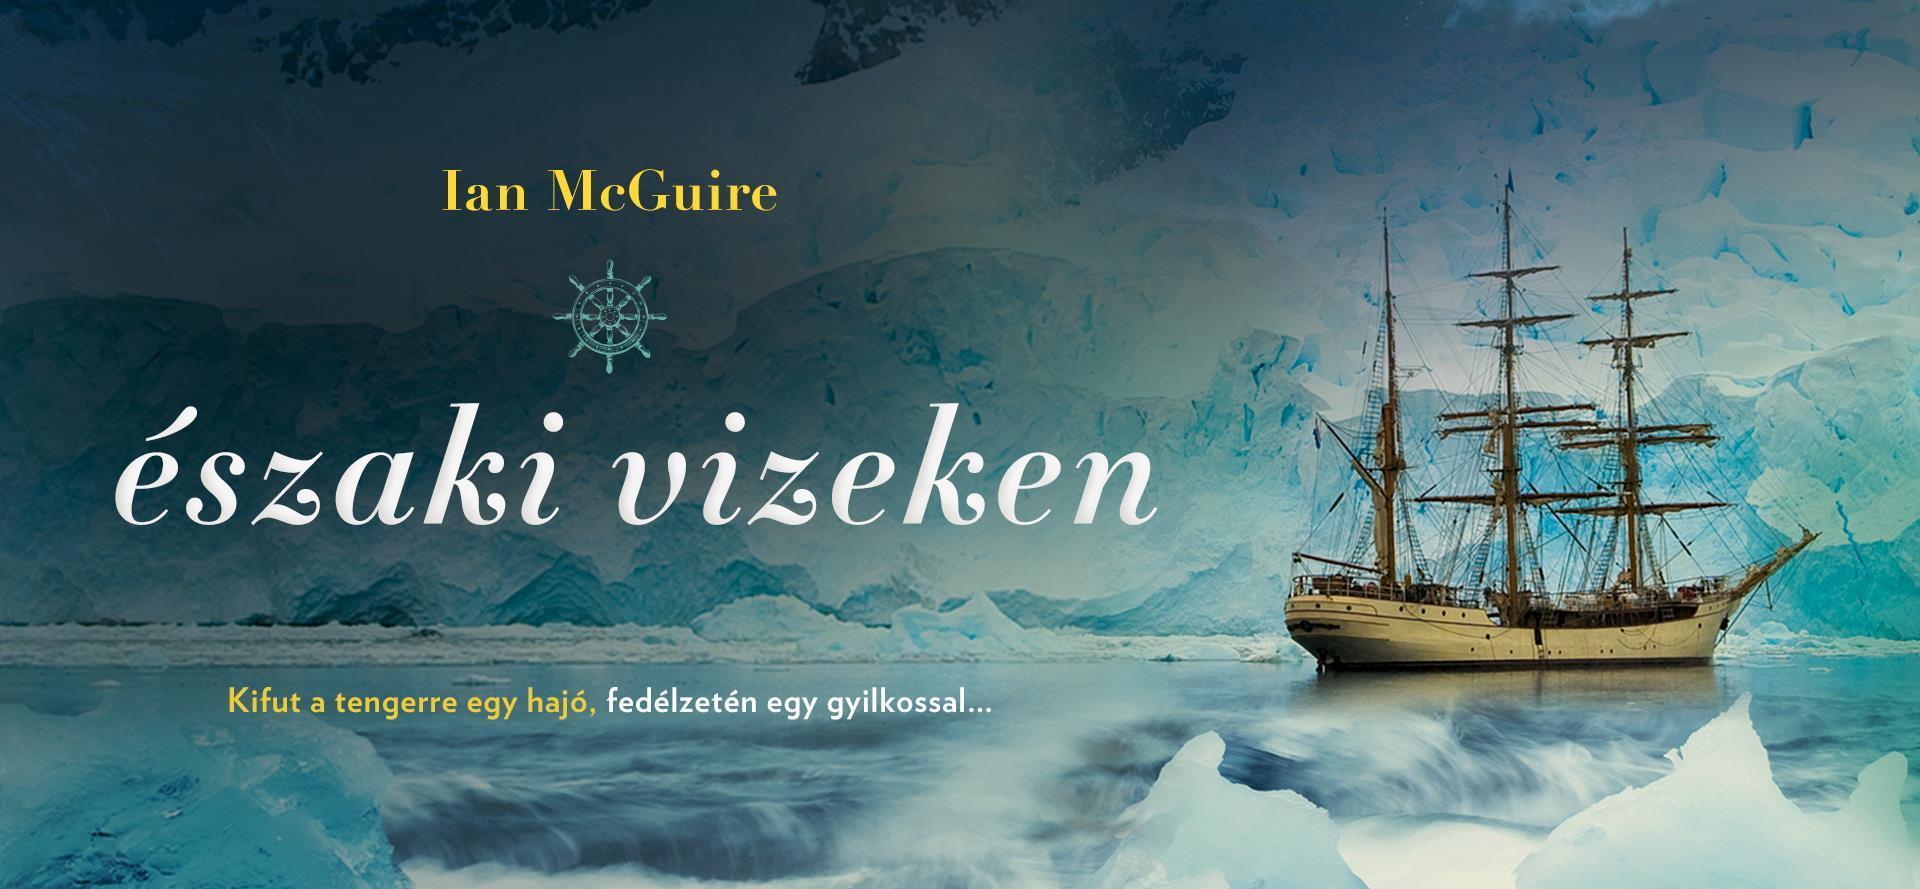 Minisorozat készül Ian McGuire Északi vizeken című kötetéből